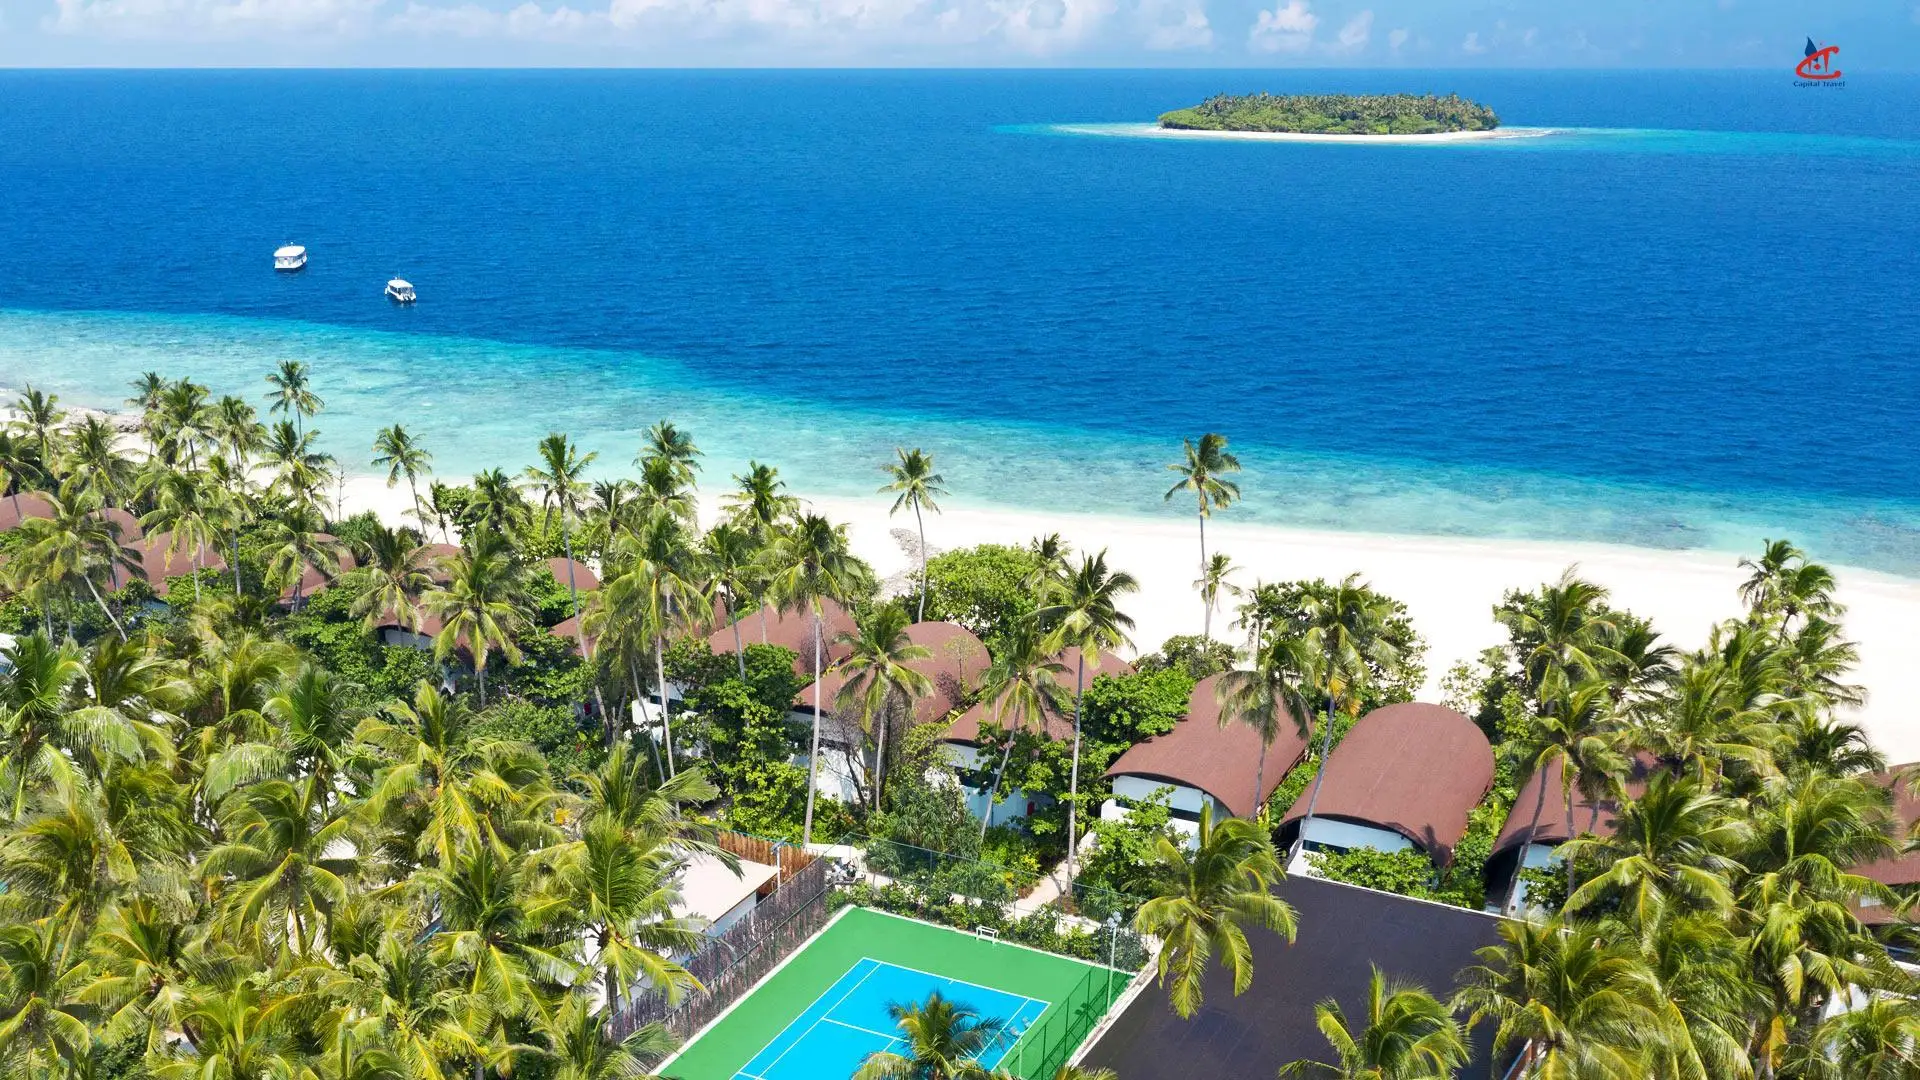 The Westin Maldives Miriandhoo Resort resort beach